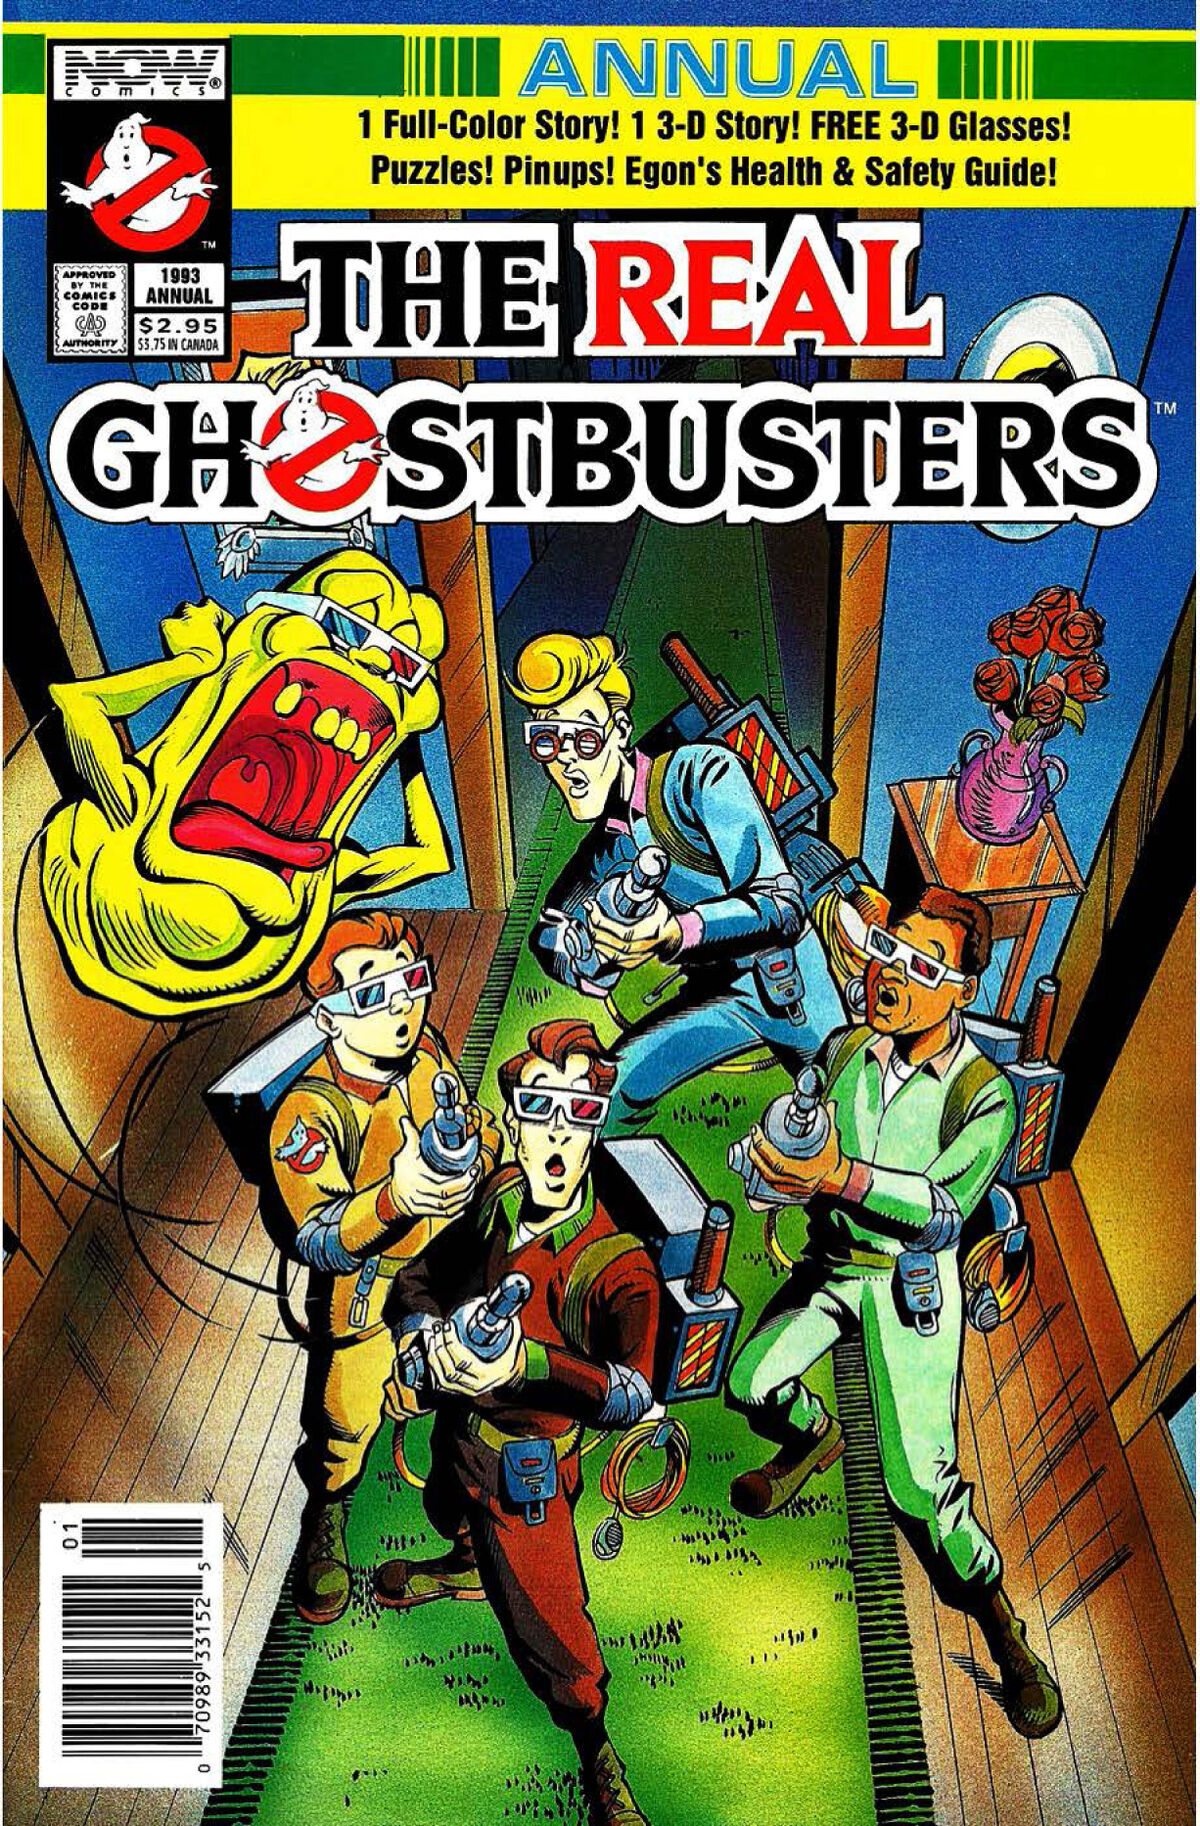 Ghostbusters (comics) - Wikipedia